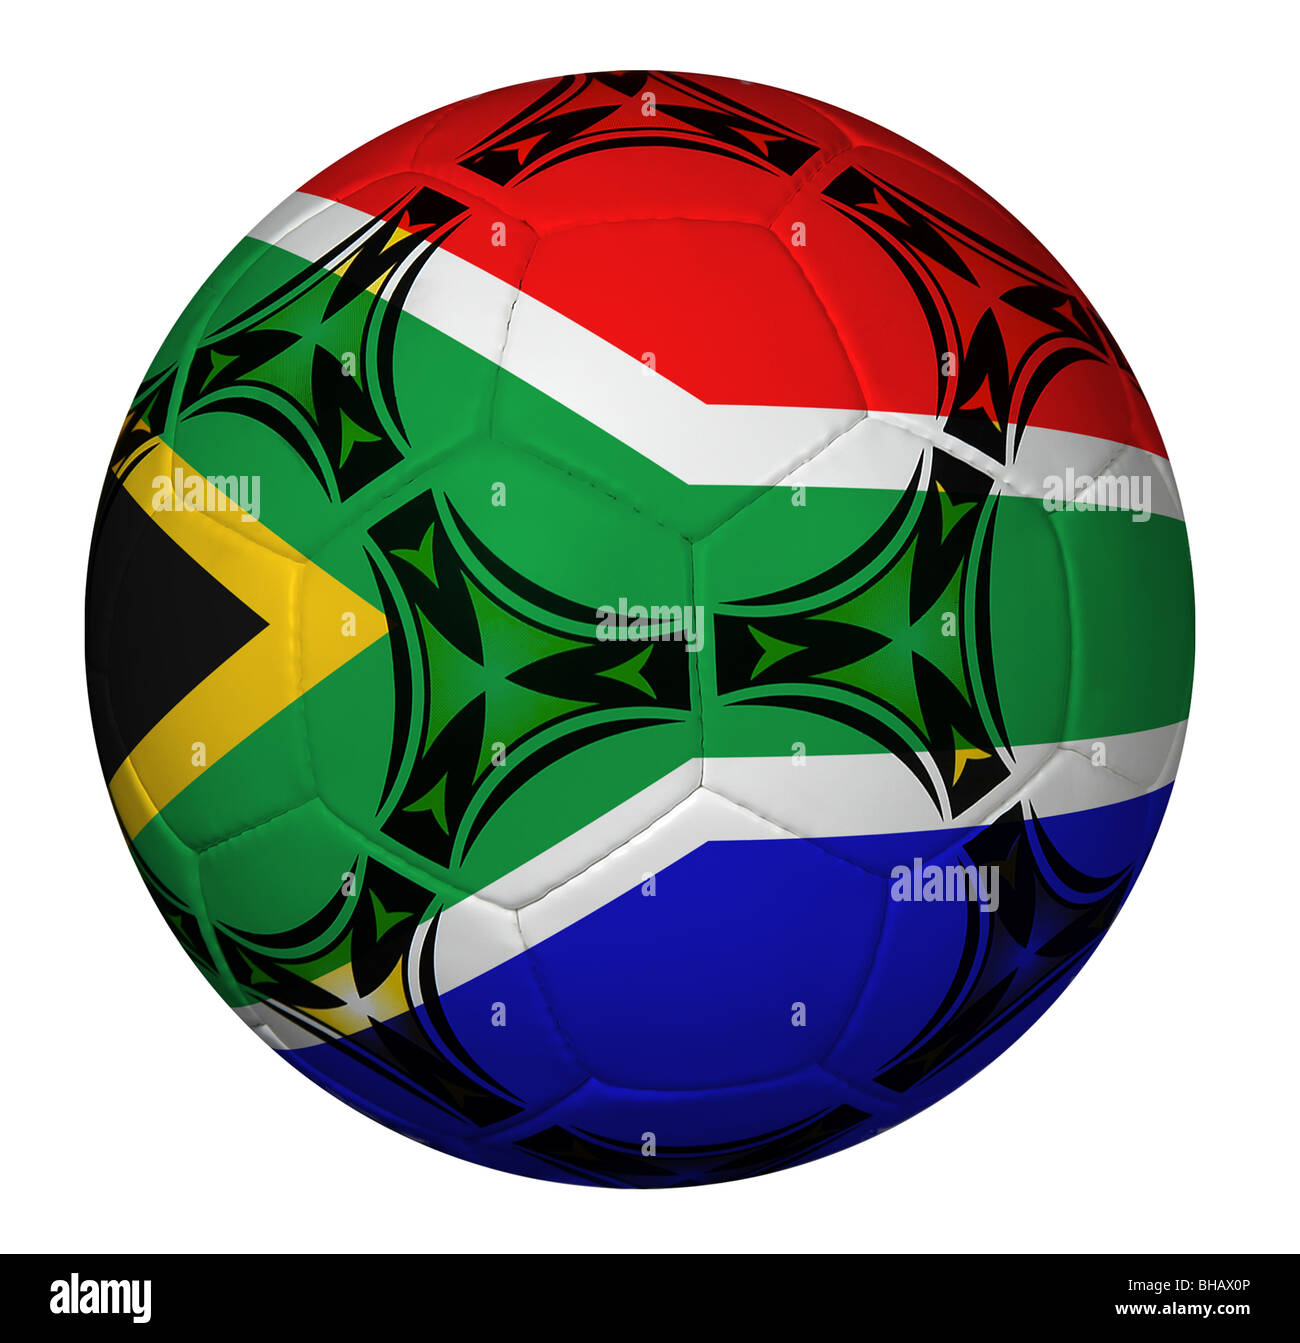 Ballon de soccer avec drapeau de l'Afrique du Sud isolée sur fond blanc Banque D'Images